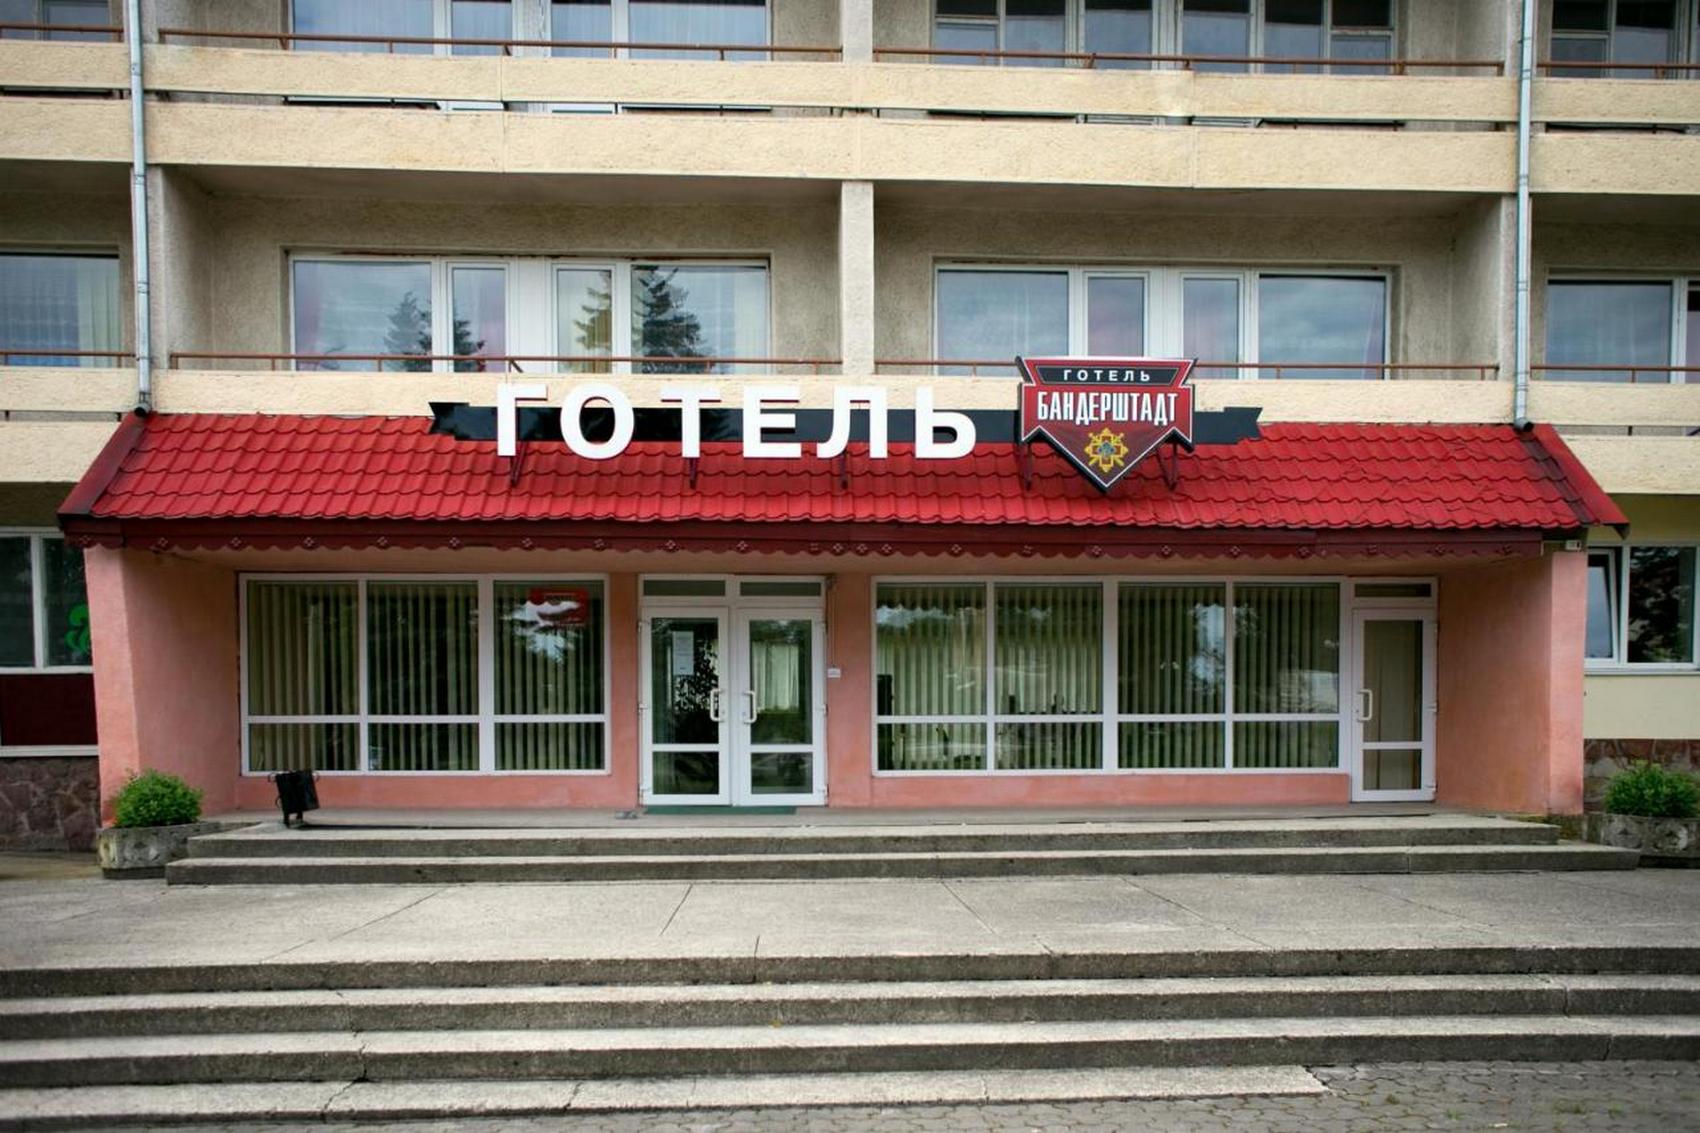 Фасад отеля «Бандерштадт» в Ивано-Франковске украсят эмблемой с элементом символики СС «Галичина» (фото)